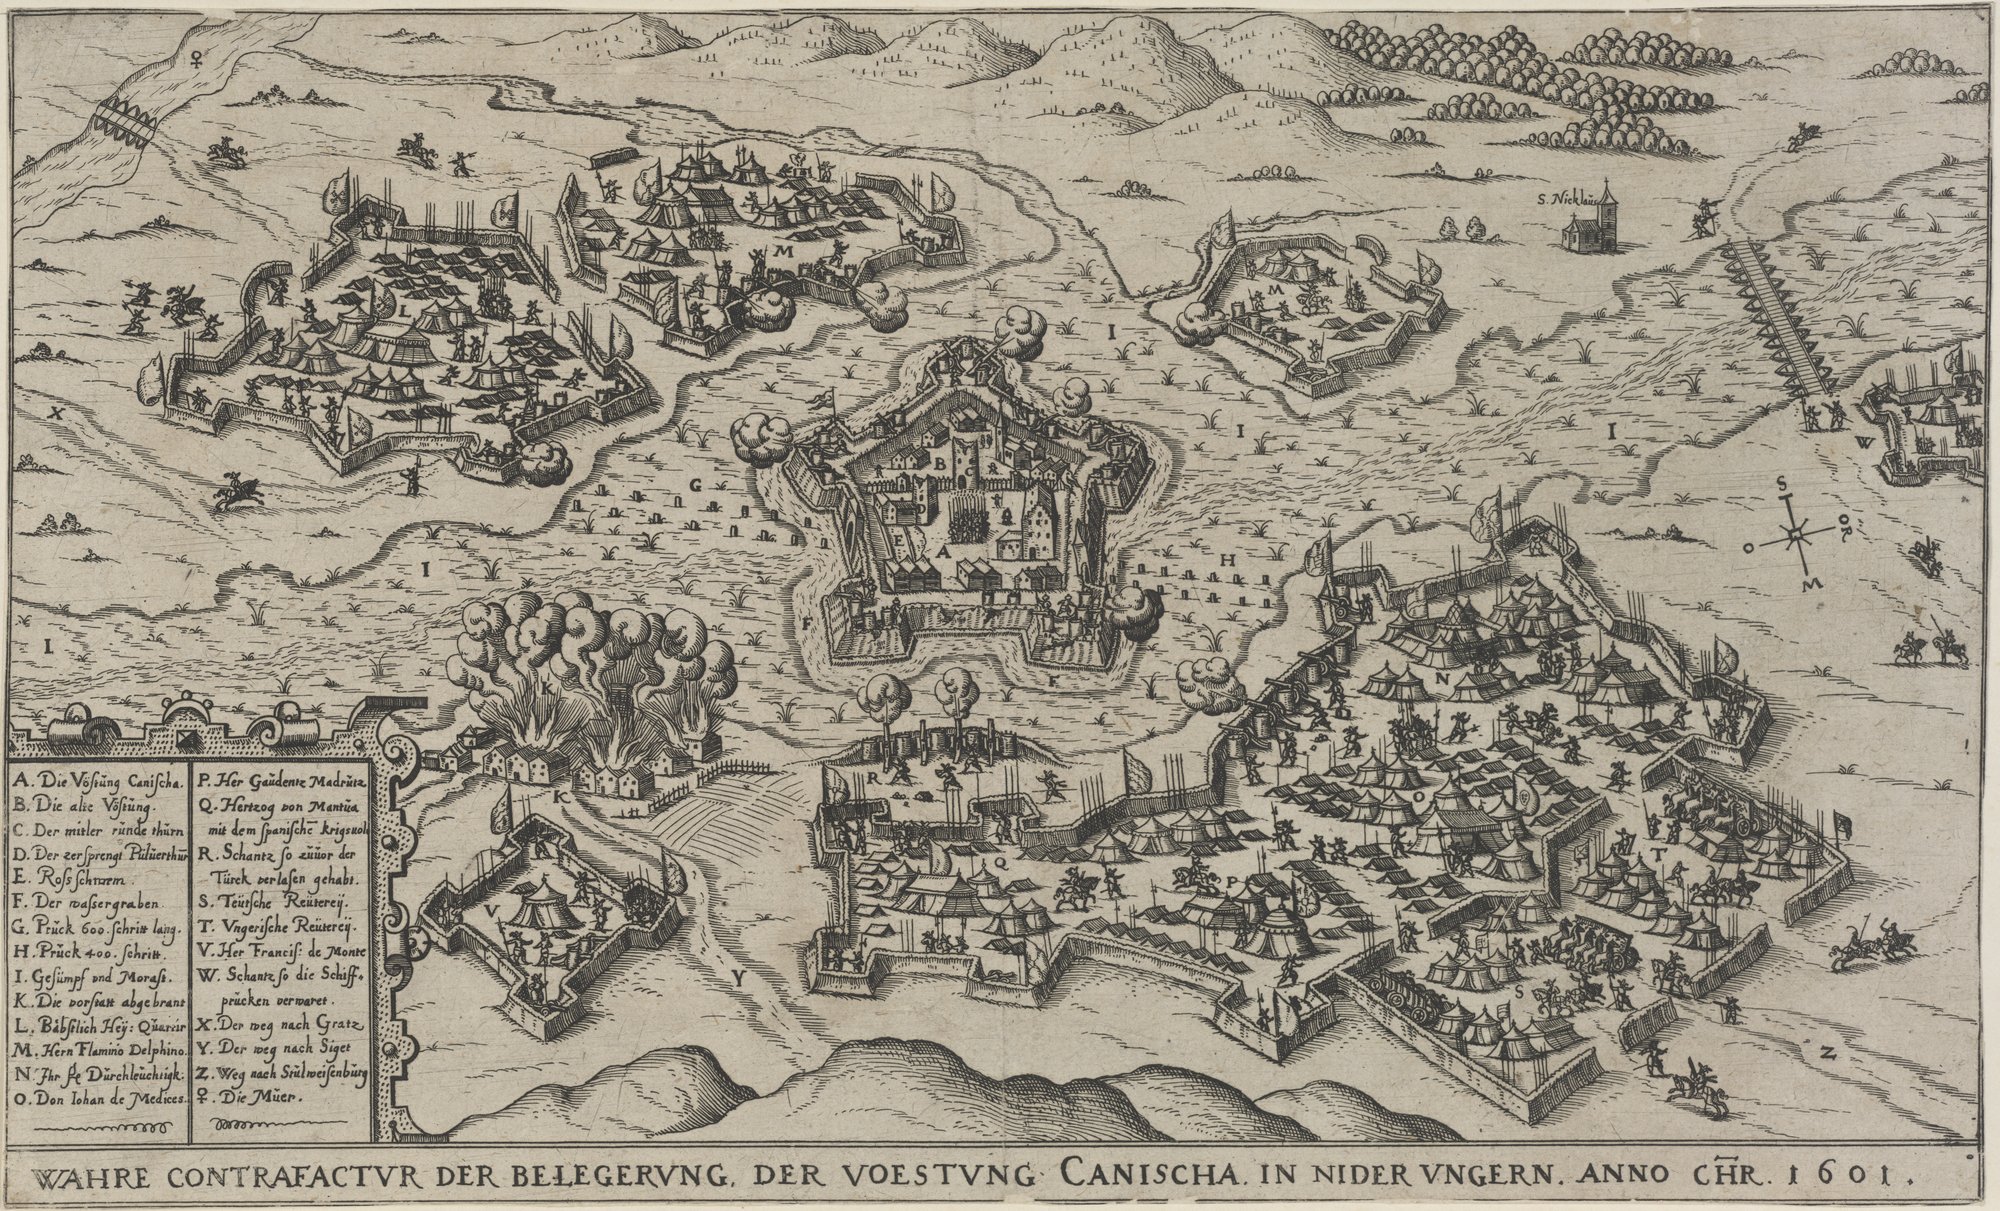 WAHRE CONTRAFACTUR DER BELEGERUNG, DER VOESTUNG CANISCHA, IN NIDER UNGERN, ANNO CHR. 1601. (Kulturstiftung Sachsen-Anhalt Public Domain Mark)